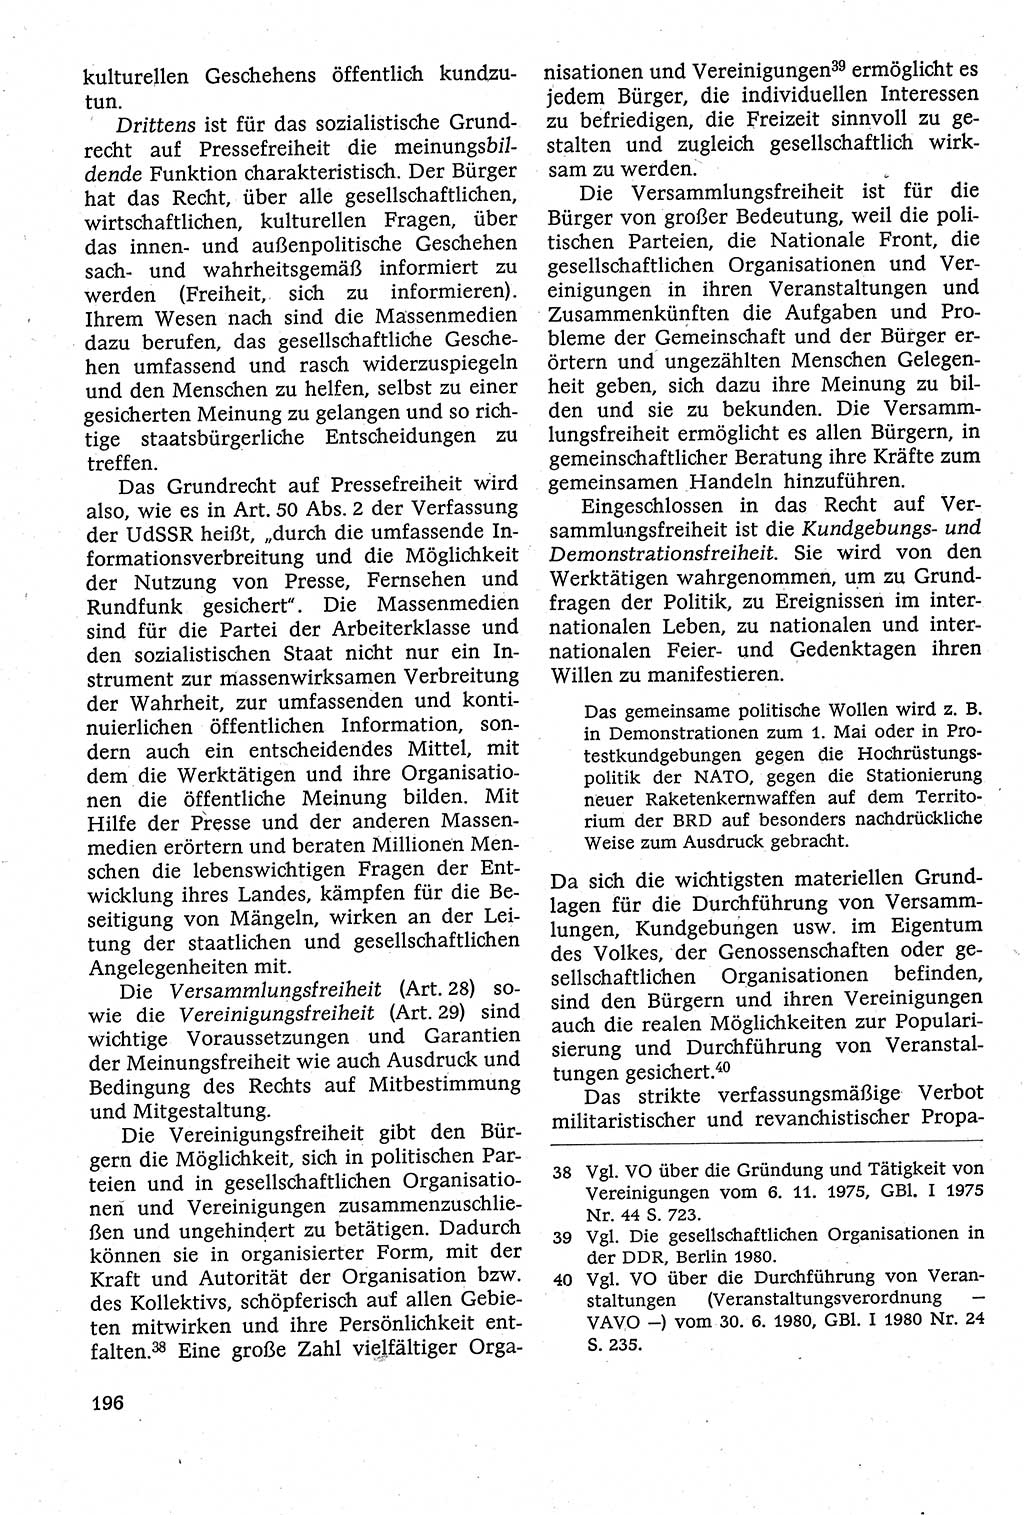 Staatsrecht der DDR [Deutsche Demokratische Republik (DDR)], Lehrbuch 1984, Seite 196 (St.-R. DDR Lb. 1984, S. 196)